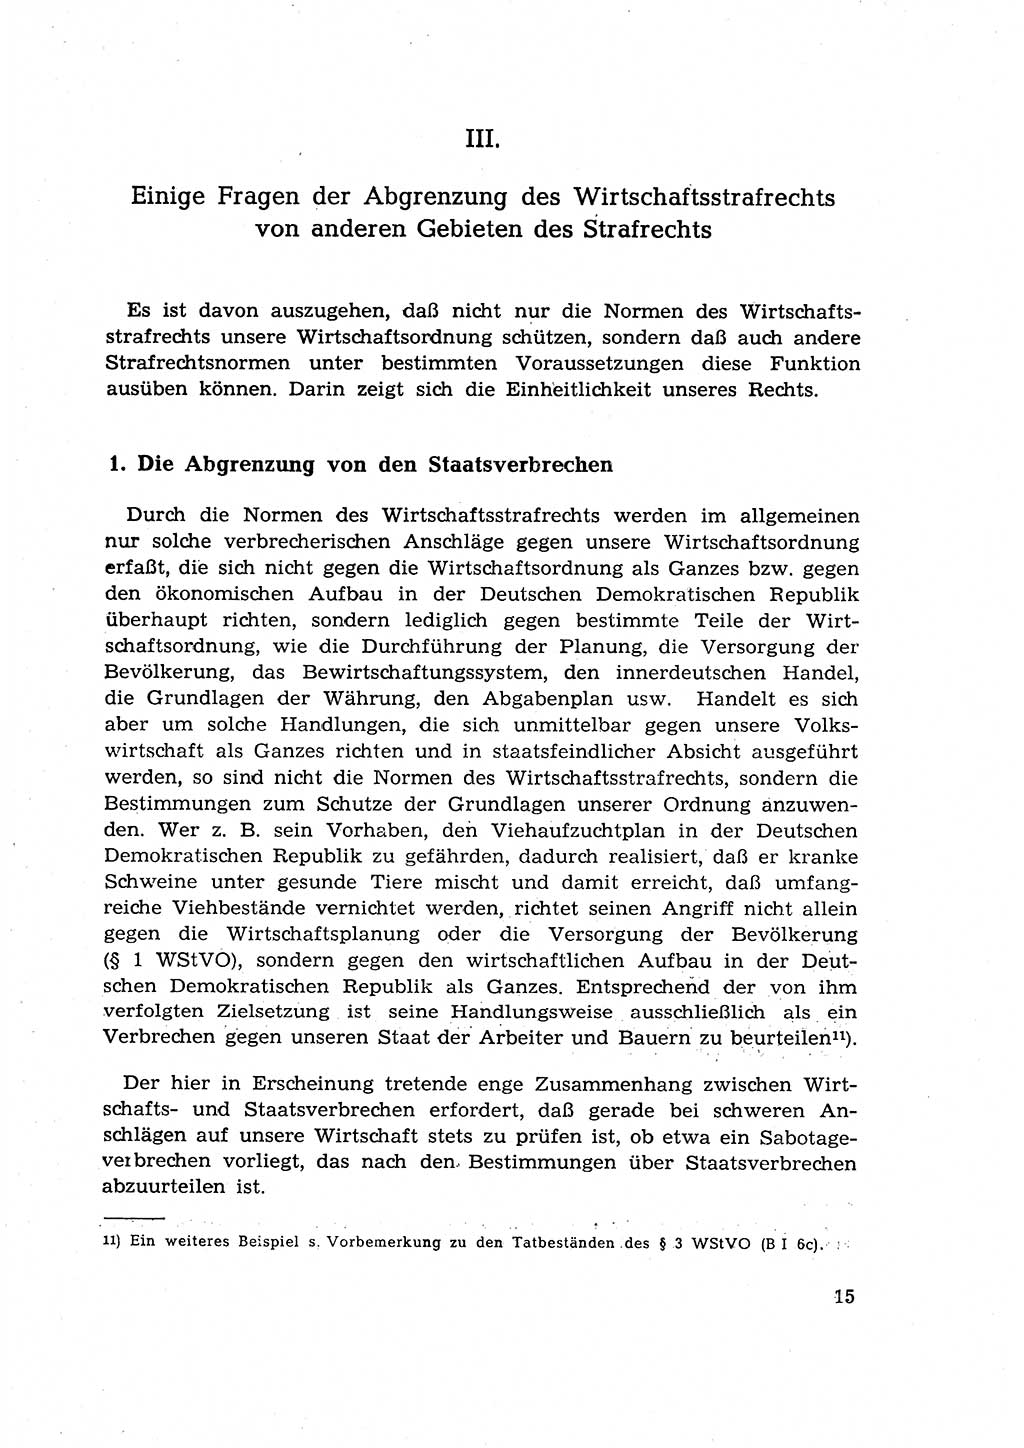 Materialien zum Strafrecht, Besonderer Teil [Deutsche Demokratische Republik (DDR)] 1955, Seite 15 (Mat. Strafr. BT DDR 1955, S. 15)